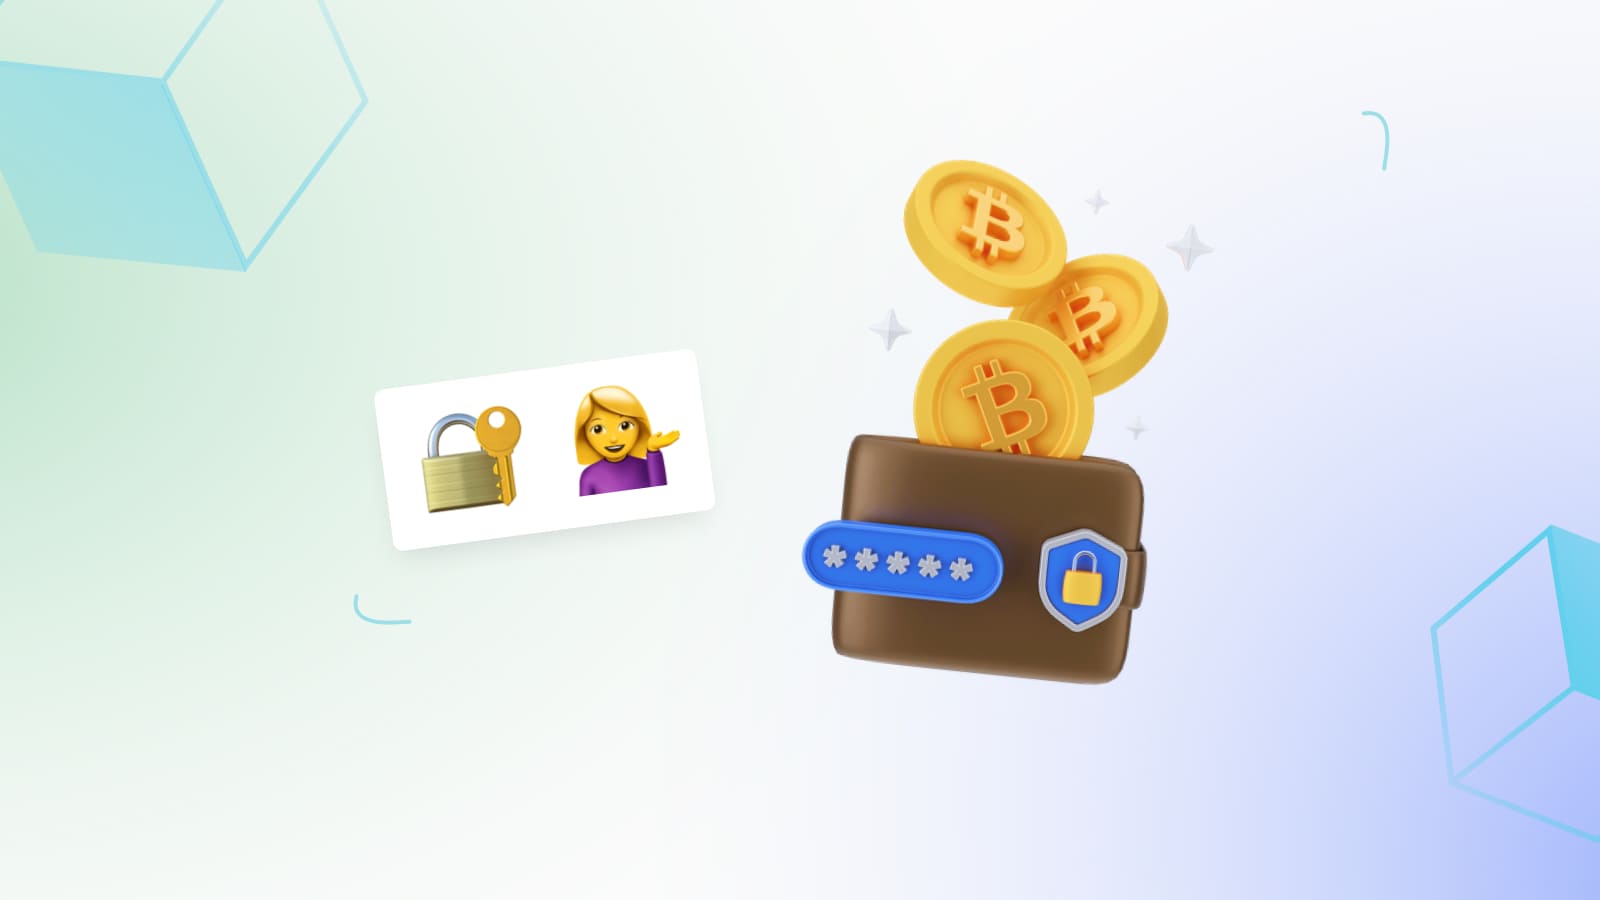 Криптовалютный кошелек — это хранилище открытых и закрытых ключей, с помощью которых владелец получает доступ к своим цифровым активам